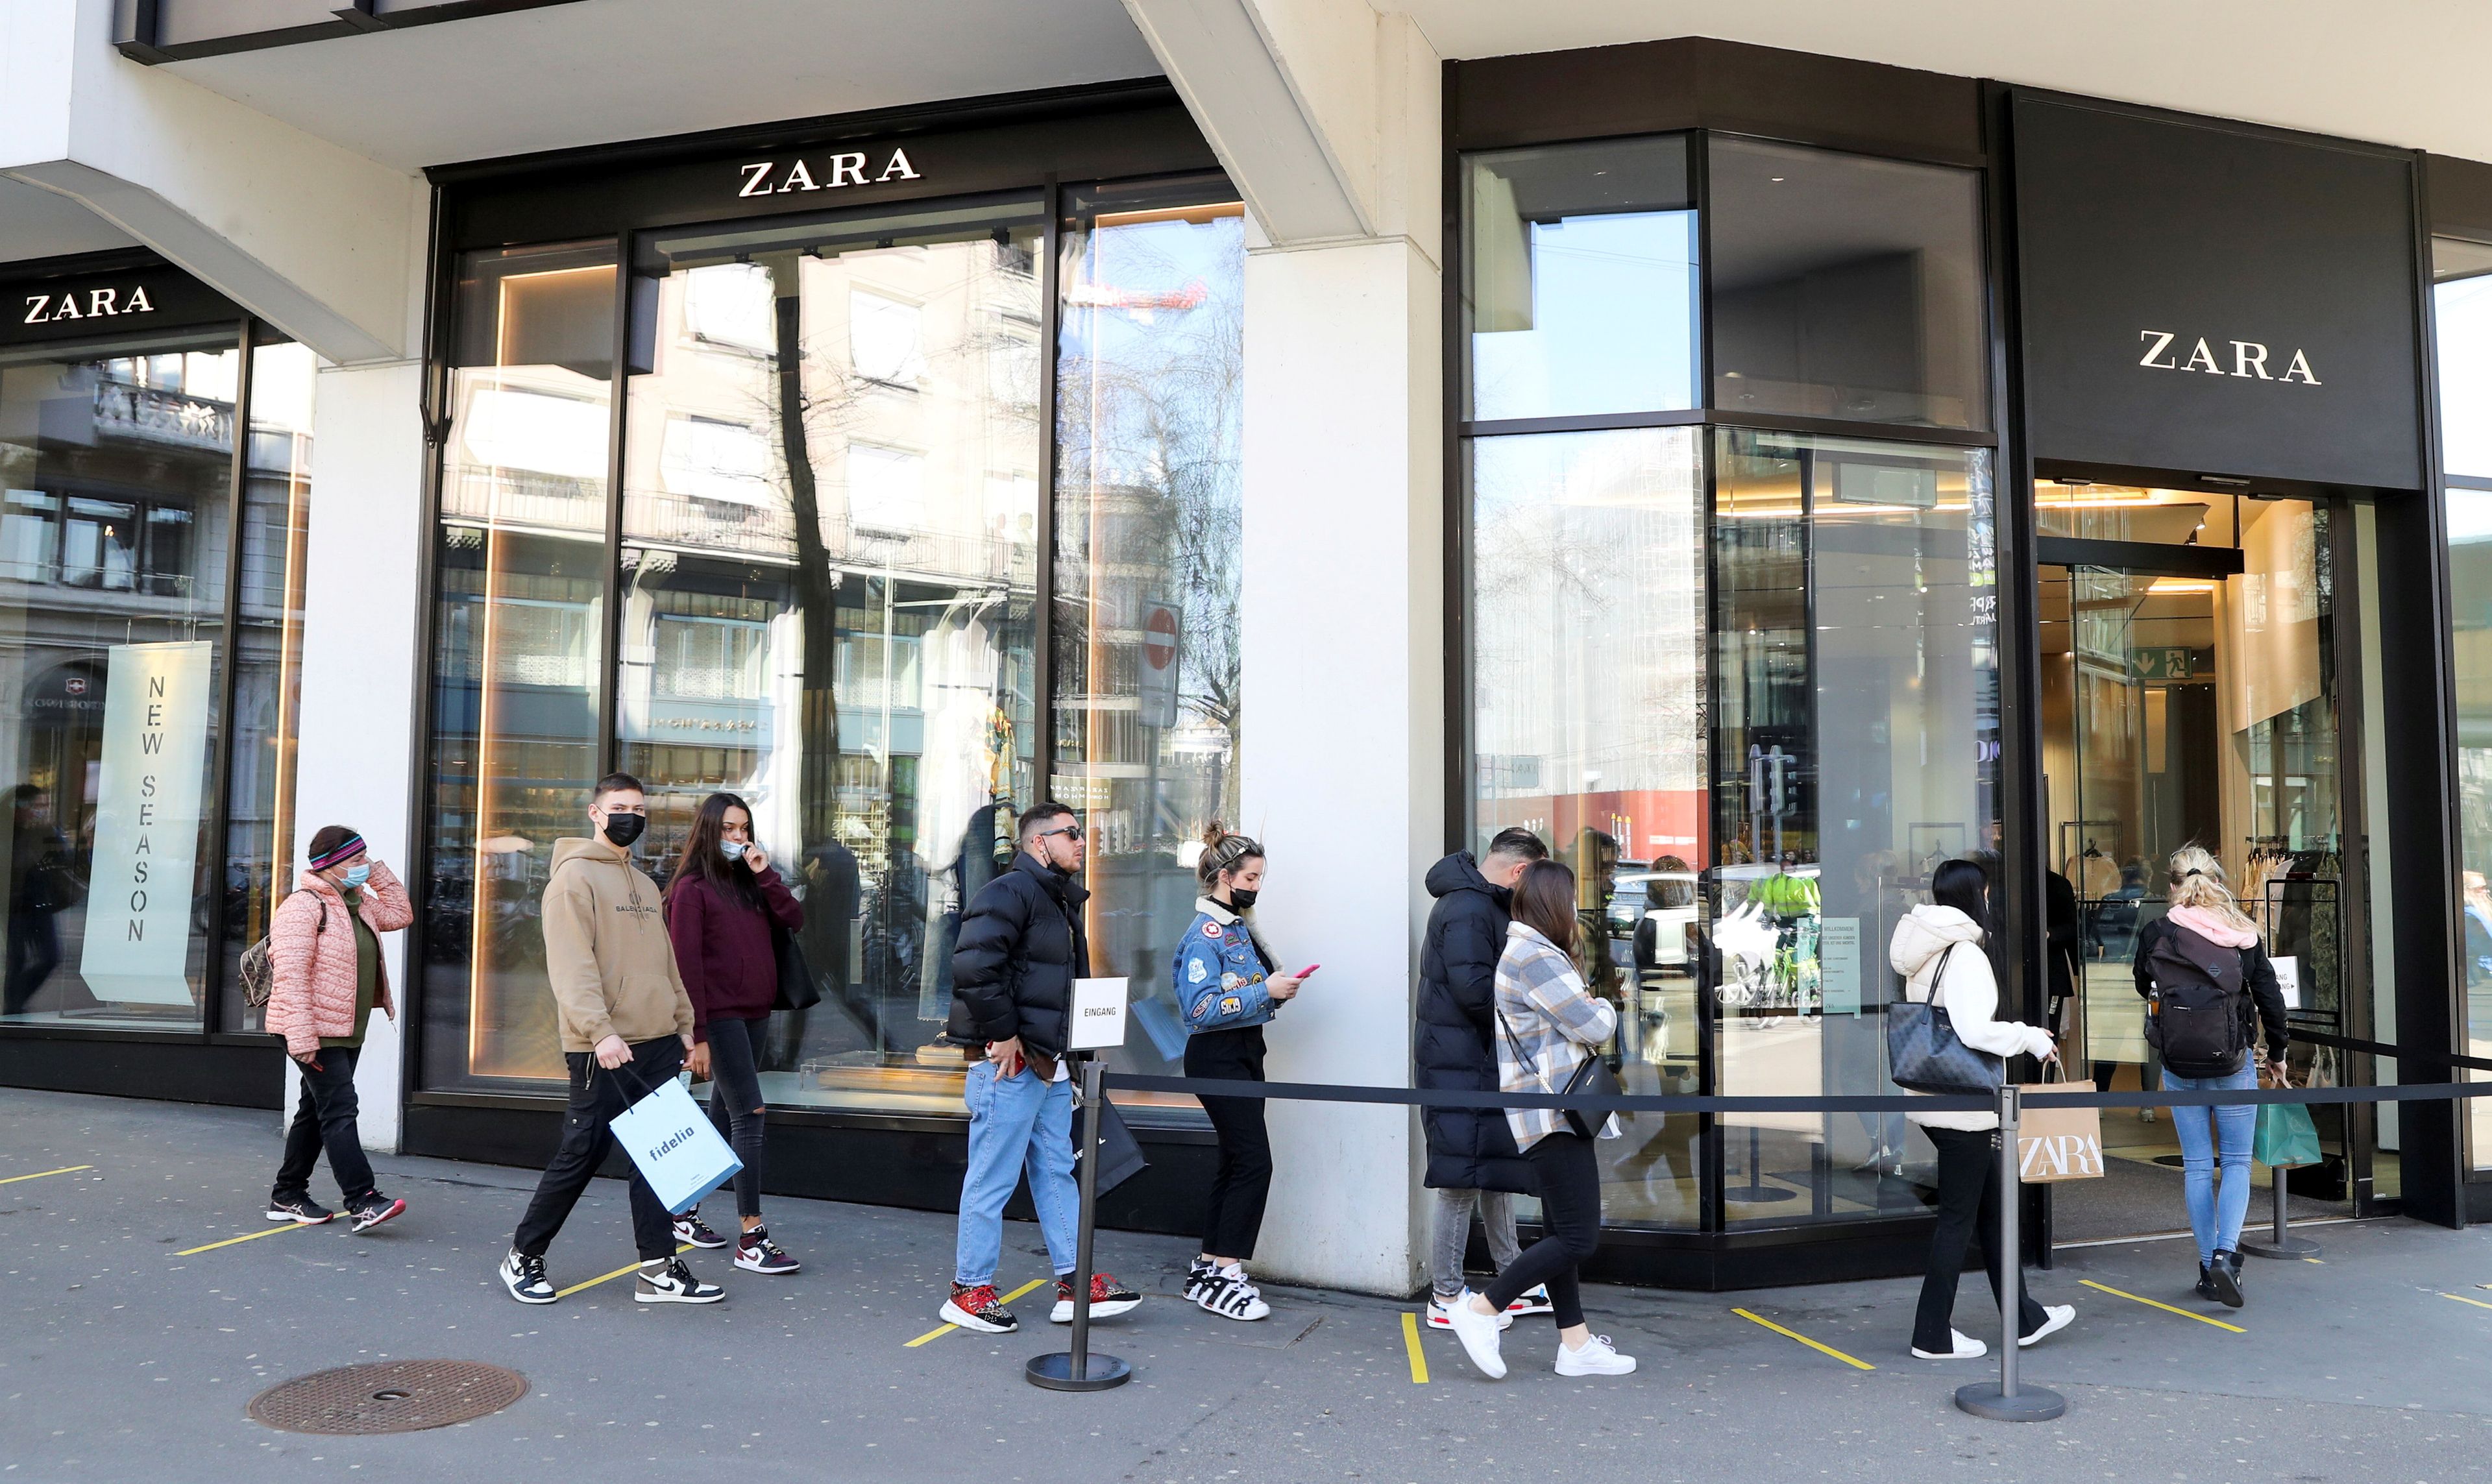 En imagen, una tienda Zara